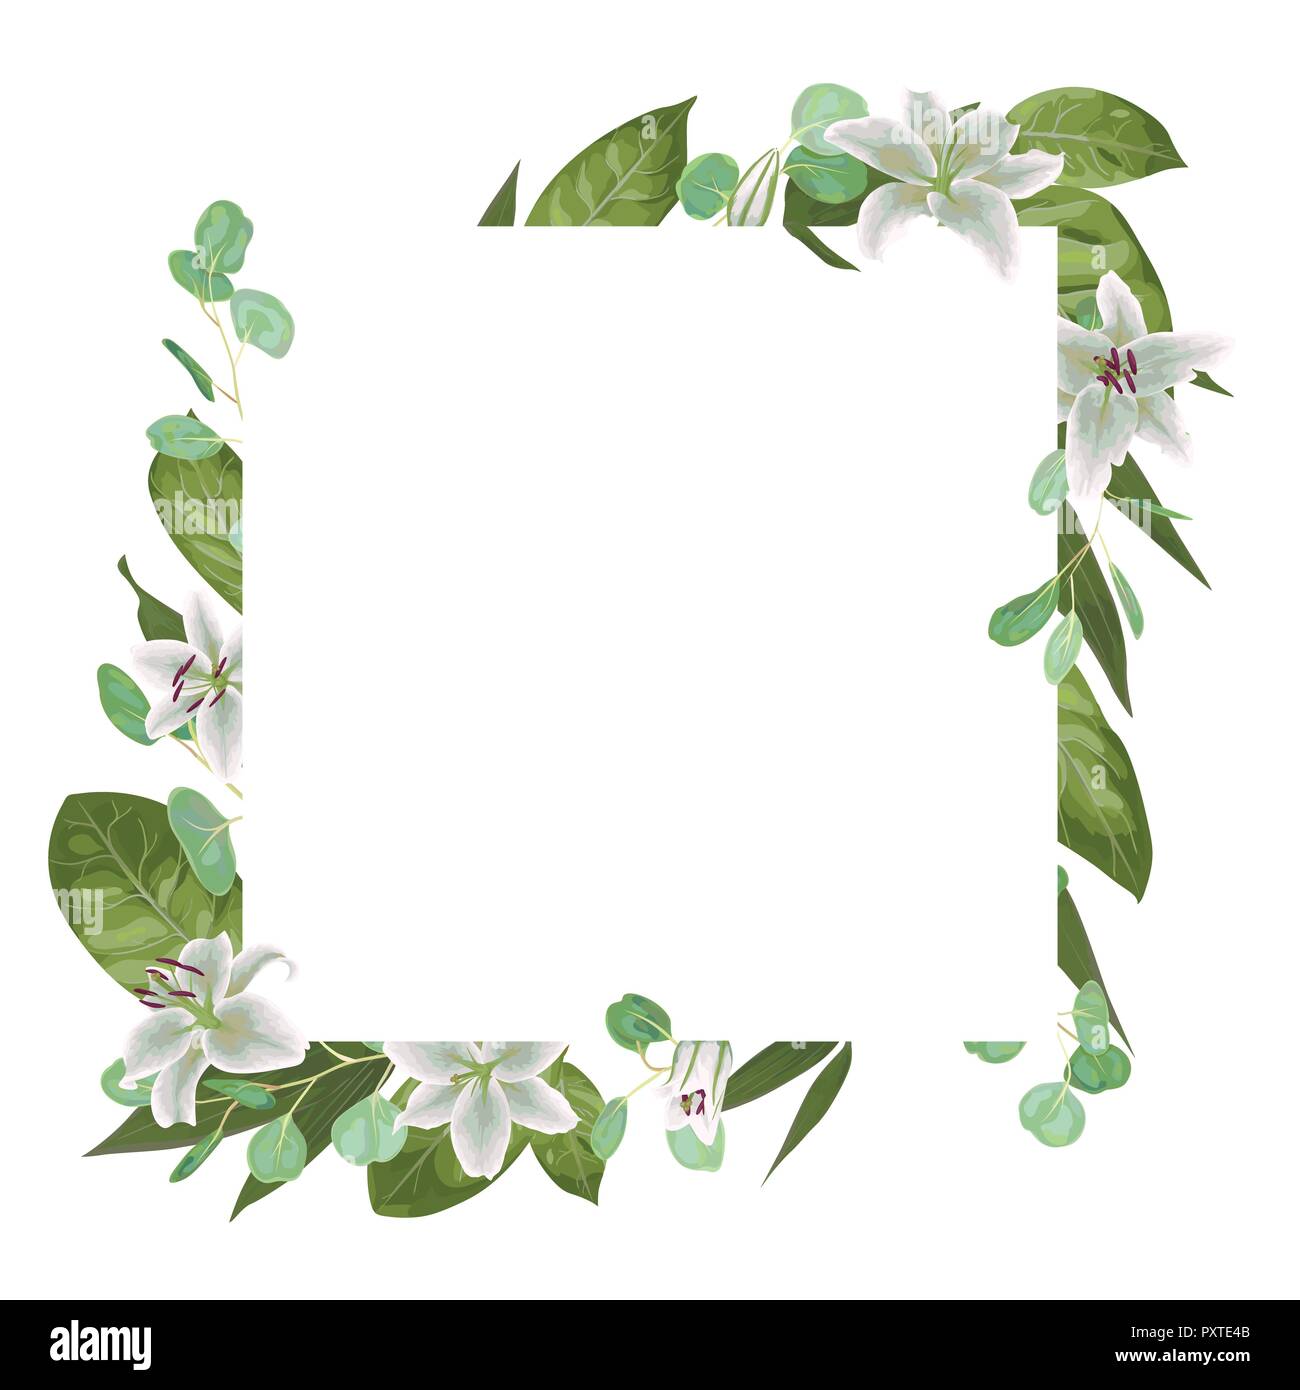 Carte vecteur floral design avec aquarelle verte, d'herbes, de feuilles d'eucalyptus, lys blanc, vert botanique, cadre décoratif, carré. Message d'accueil, postc mignon Illustration de Vecteur